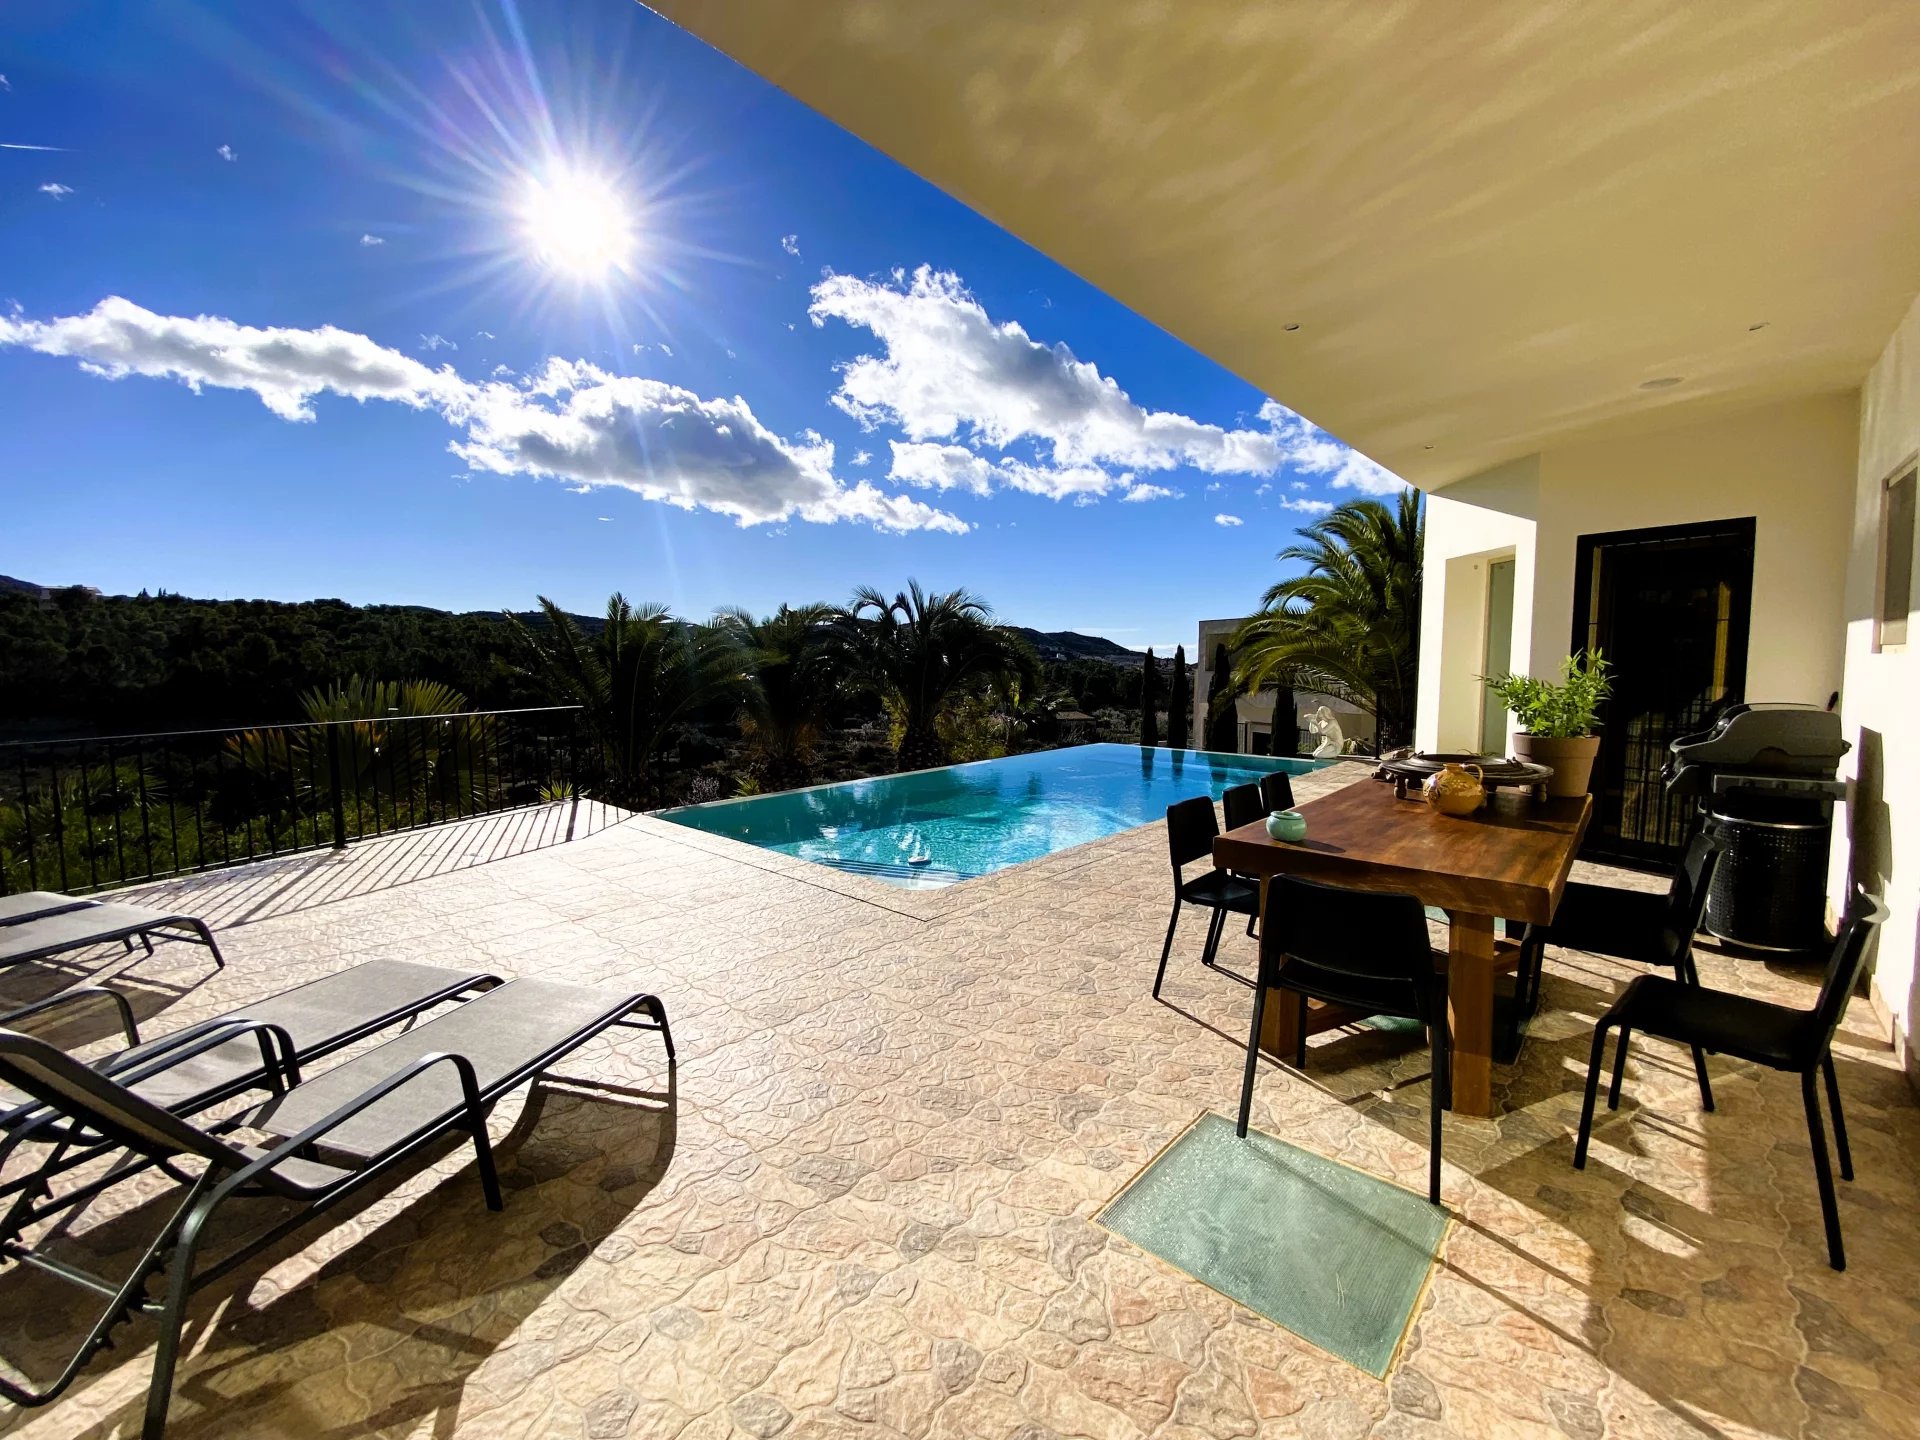 Preciosa villa de lujo con piscina interior y exterior con impresionantes vistas en venta en Busot